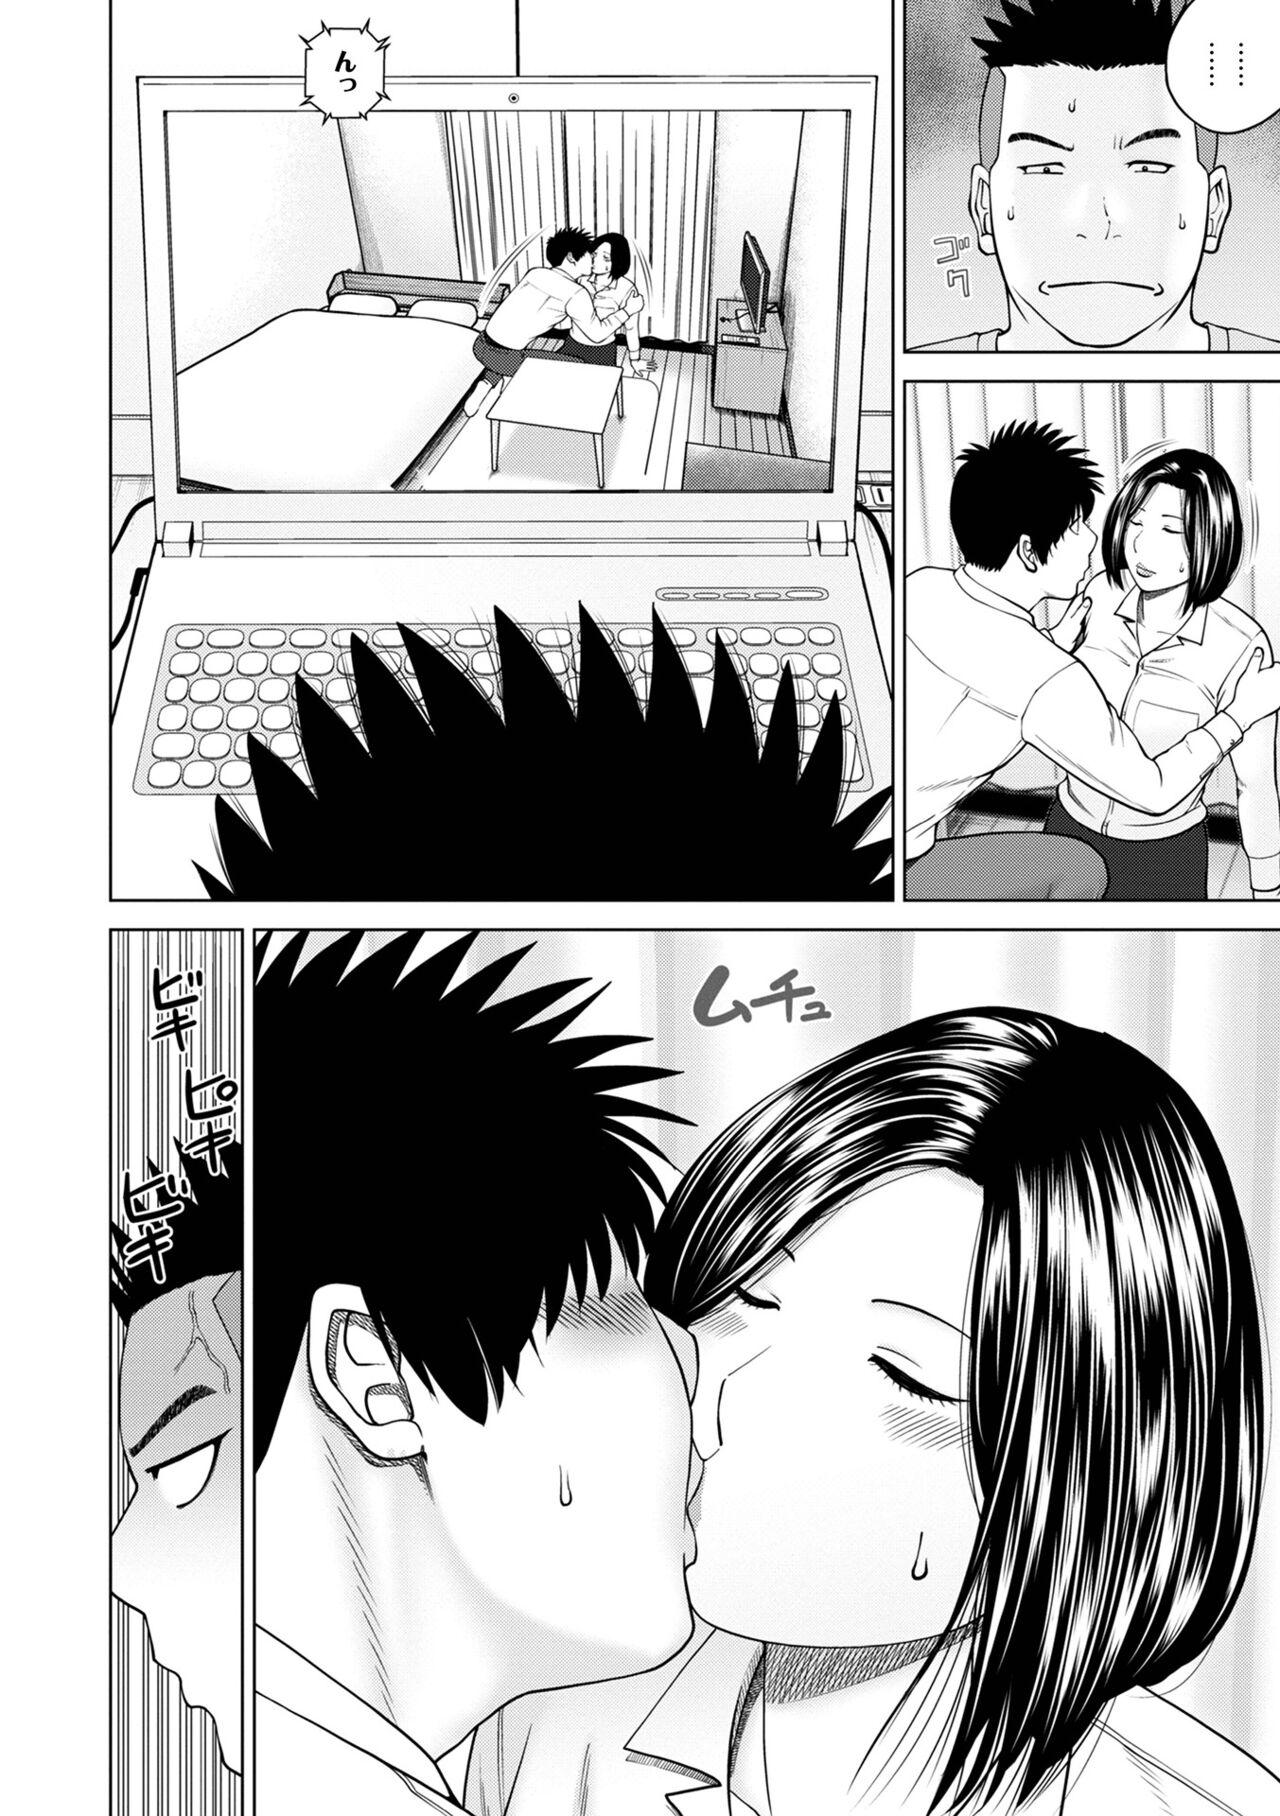 Real Orgasms WEB Ban COMIC Gekiyaba! Vol. 155 Scene - Page 8